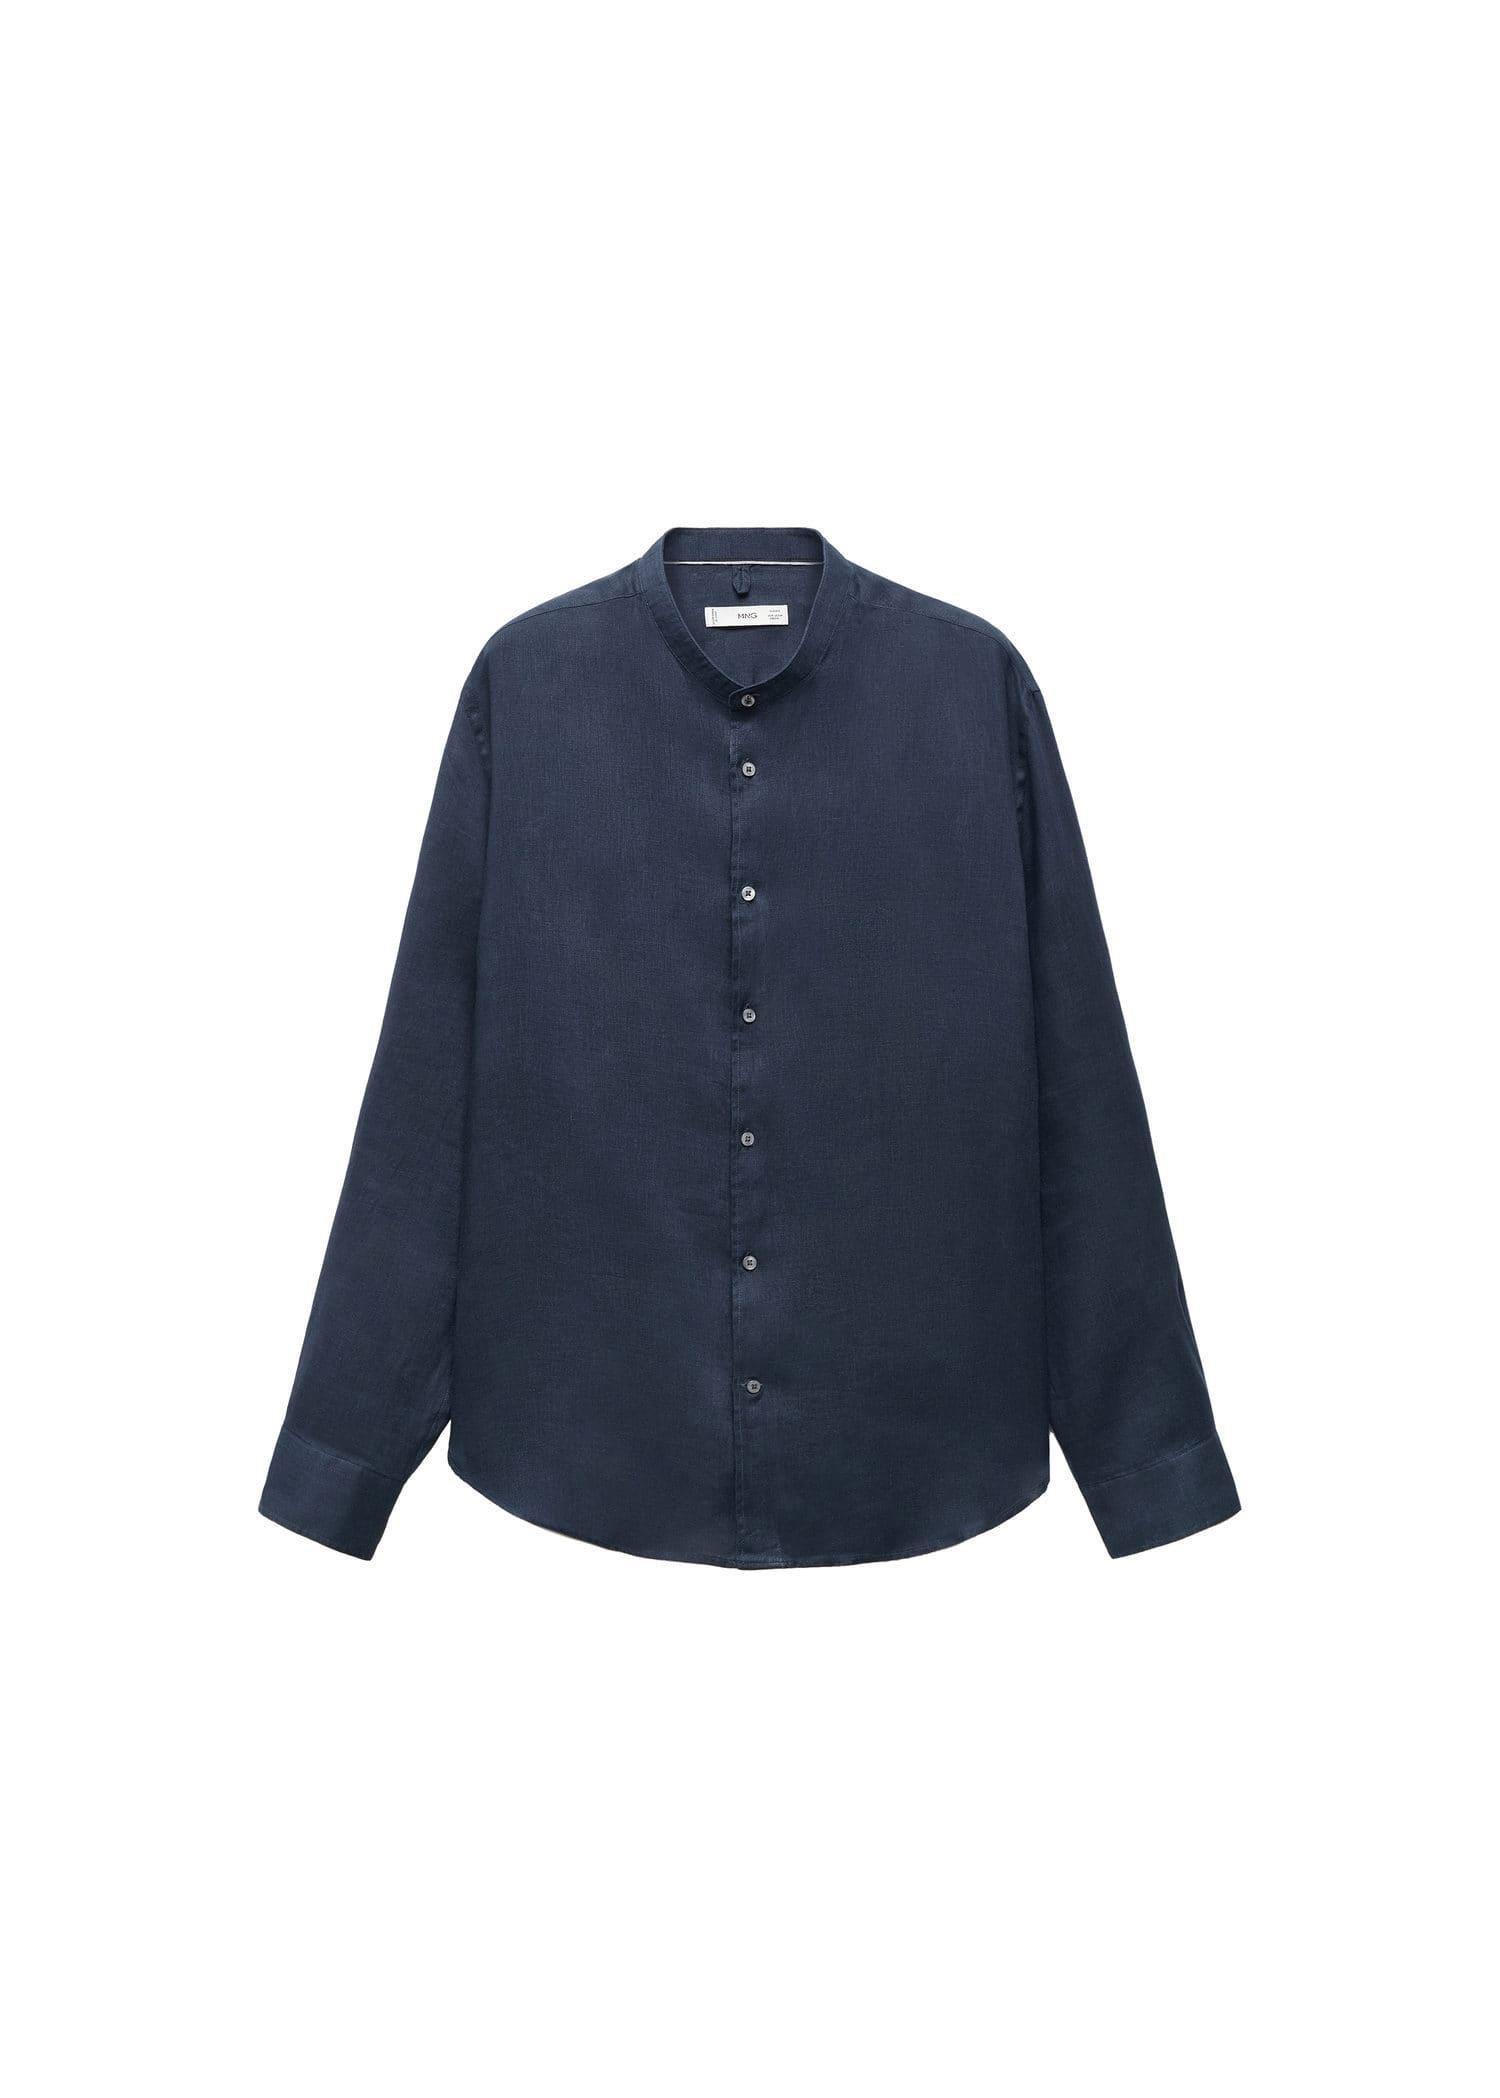 Mango - Navy Linen Mao Collar Shirt